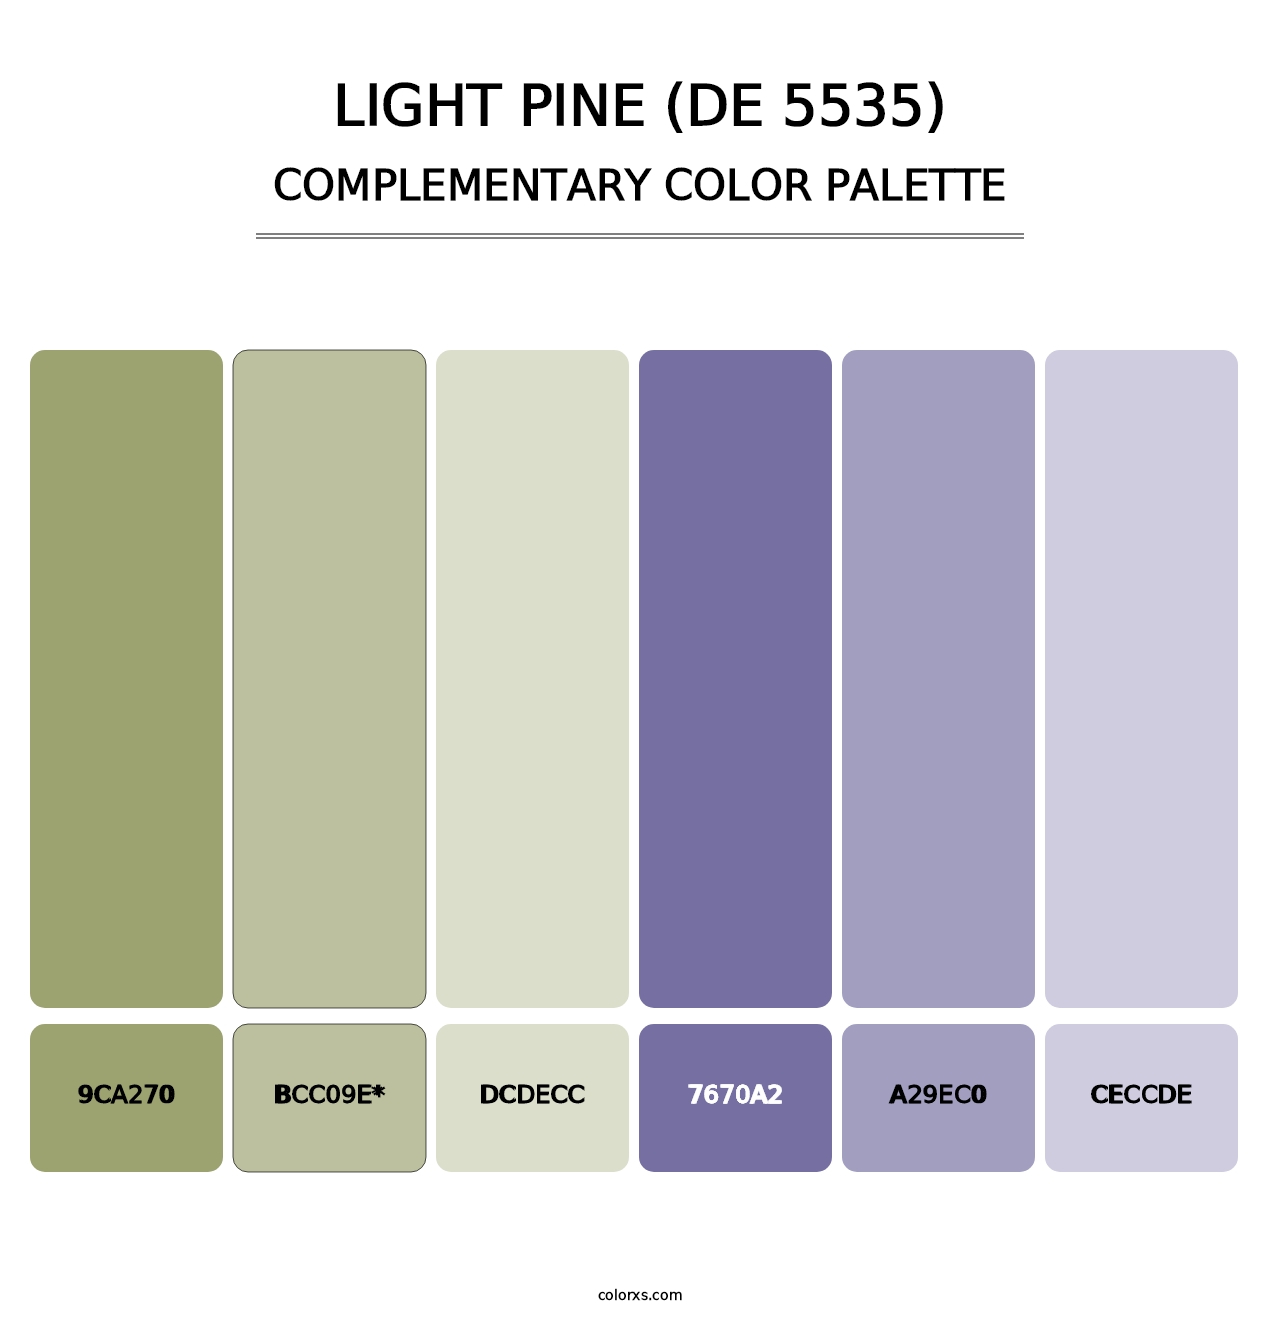 Light Pine (DE 5535) - Complementary Color Palette